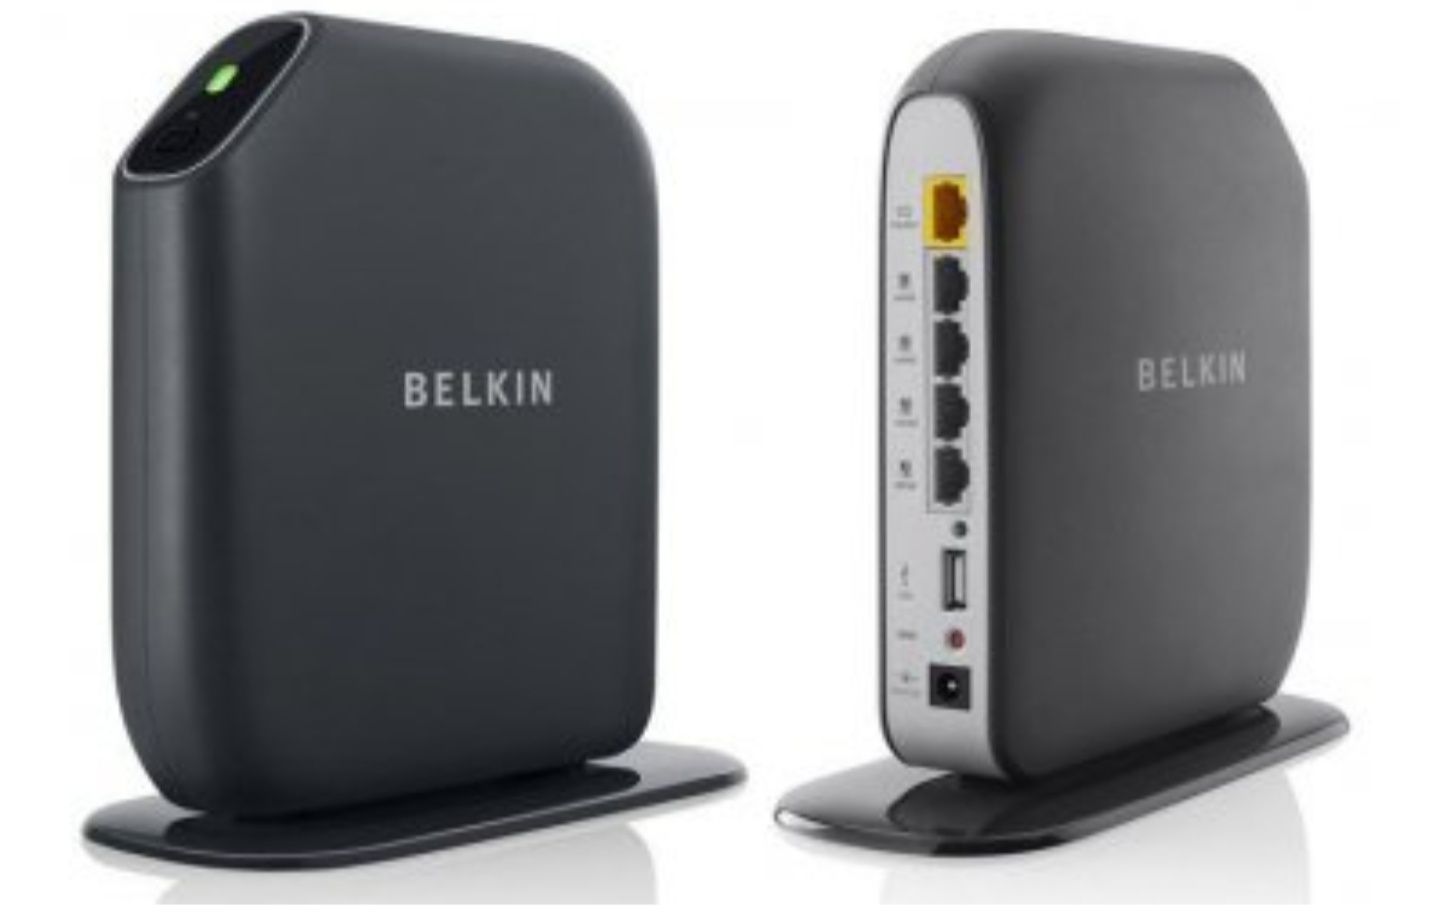 Ven int dev 34c6. Wi-Fi роутер Belkin f7d8301. Wi-Fi роутер Belkin f7d3402. Wi-Fi роутер Belkin f9l1106. Wi-Fi роутер Belkin f7d4401.